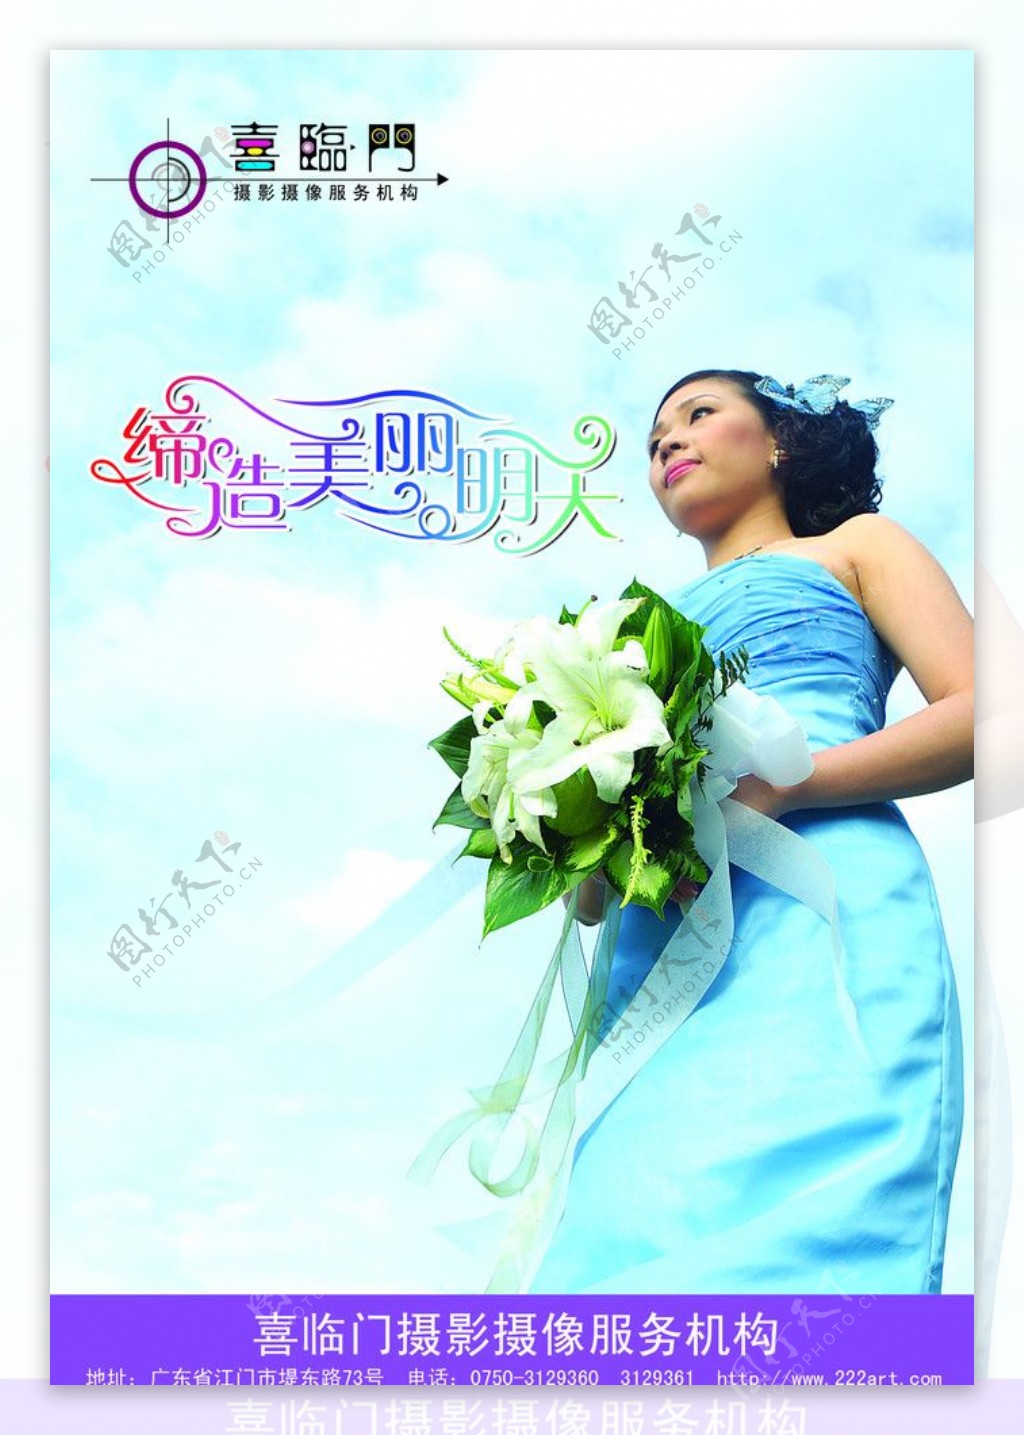 婚礼摄像海报广告设计